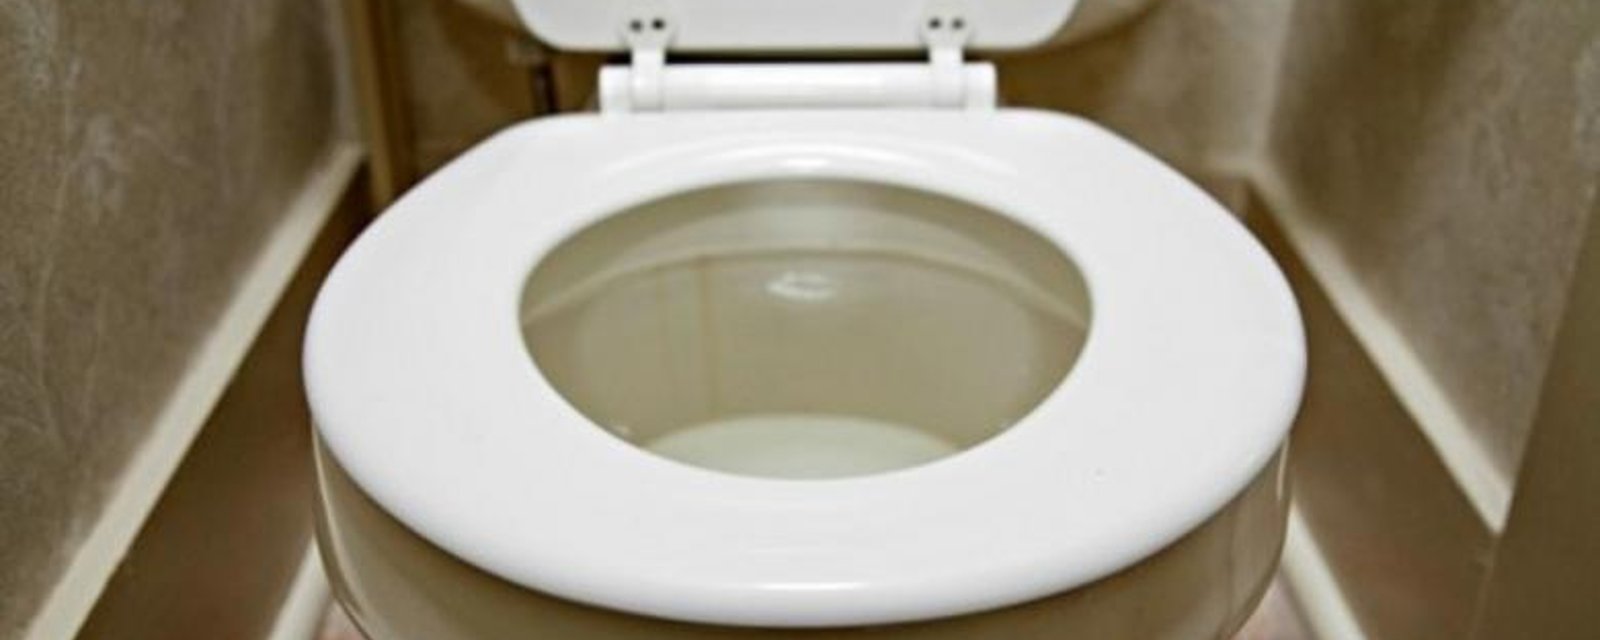 3 façons de conserver les toilettes propres avec du bicarbonate de soude! 